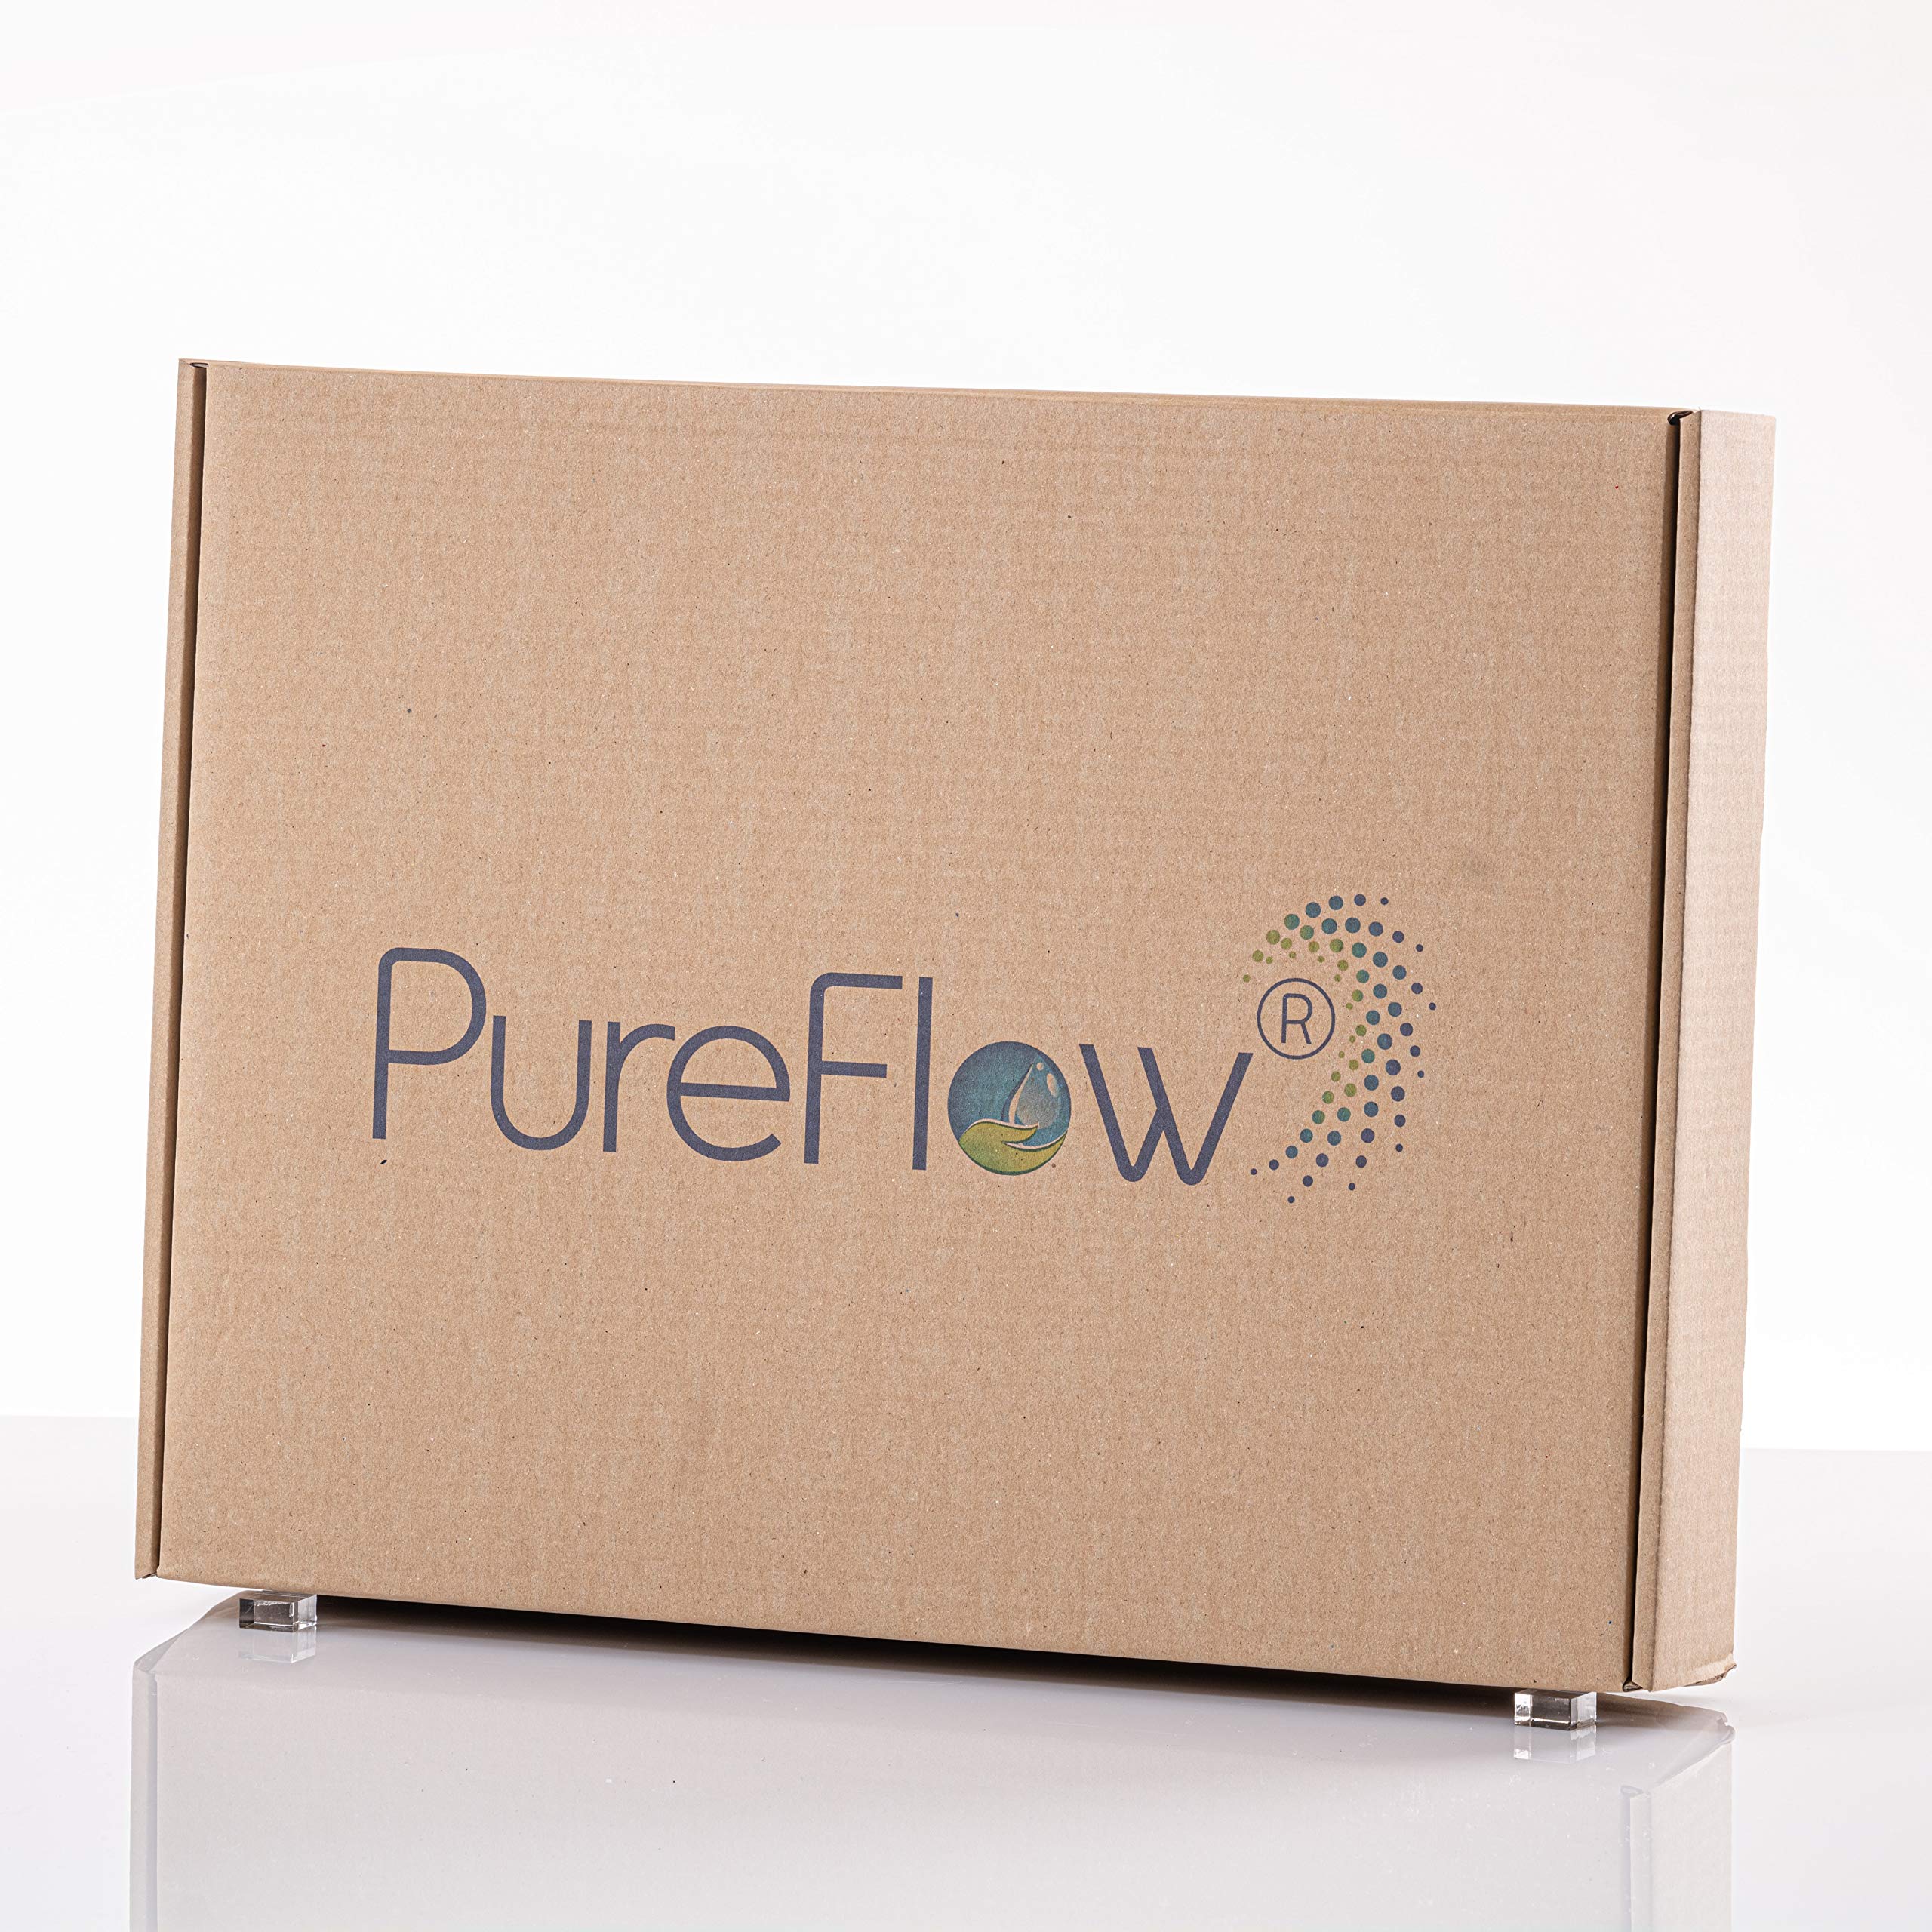 PureFlow Nature Maxi+ - Filter für Aquarien, Regentonne, Zisterne oder Teich, 2X Filtertafeln 48x38x4,5cm, 2X Filtertafeln 25x20x2,5cm